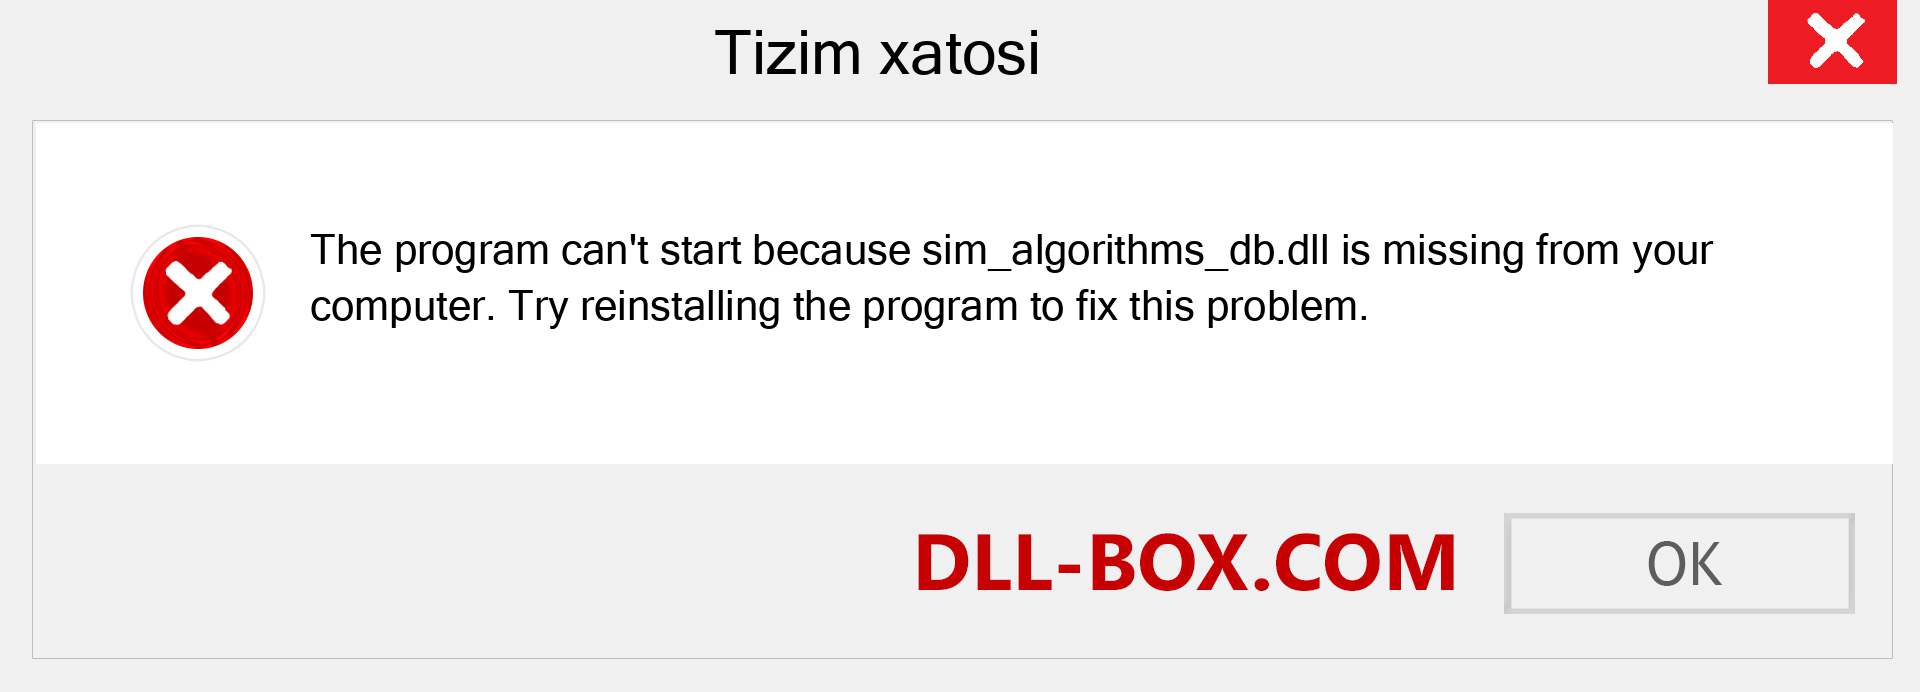 sim_algorithms_db.dll fayli yo'qolganmi?. Windows 7, 8, 10 uchun yuklab olish - Windowsda sim_algorithms_db dll etishmayotgan xatoni tuzating, rasmlar, rasmlar